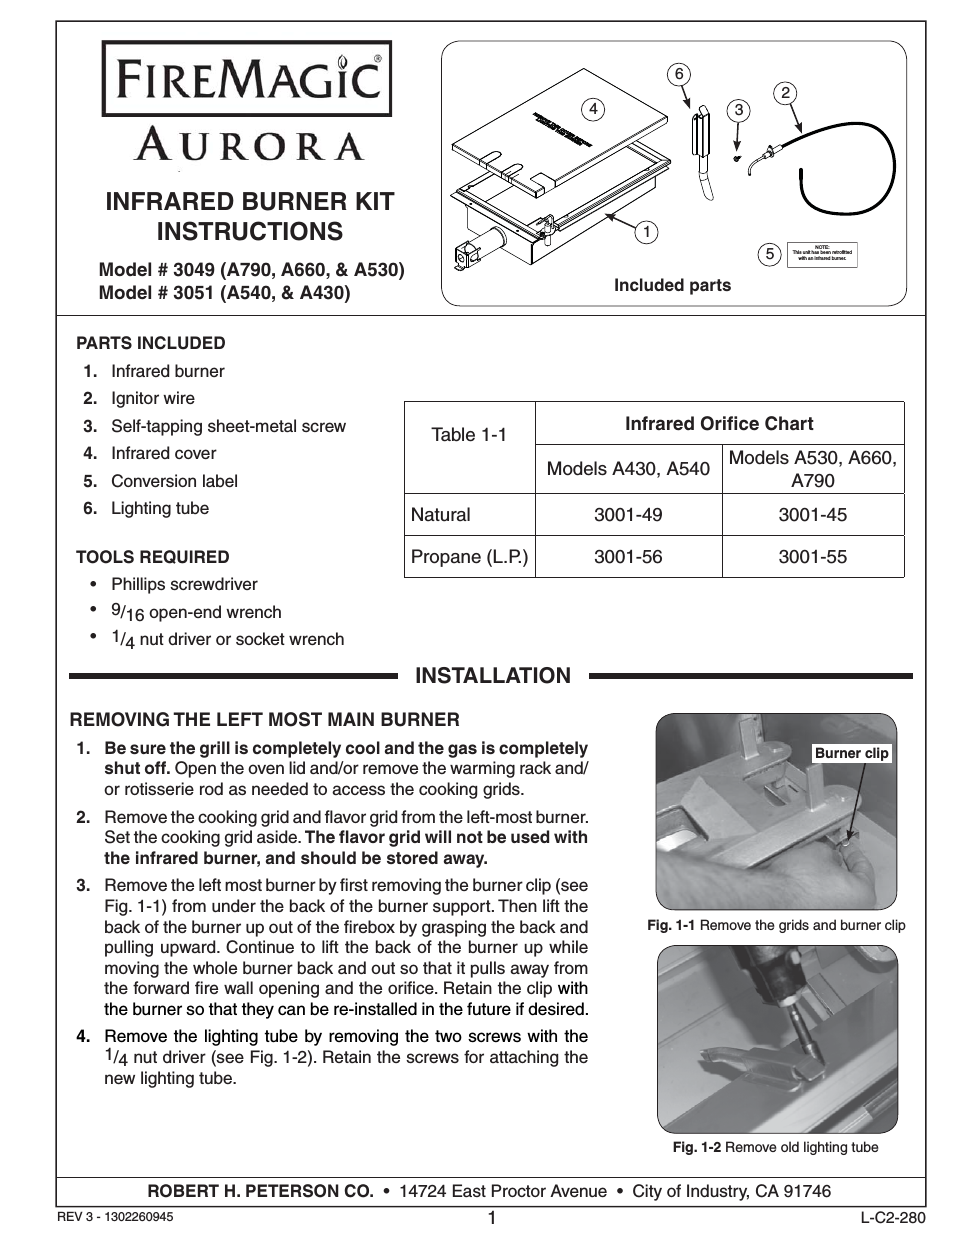 3049 Aurora Infrared Burner Kit Installation